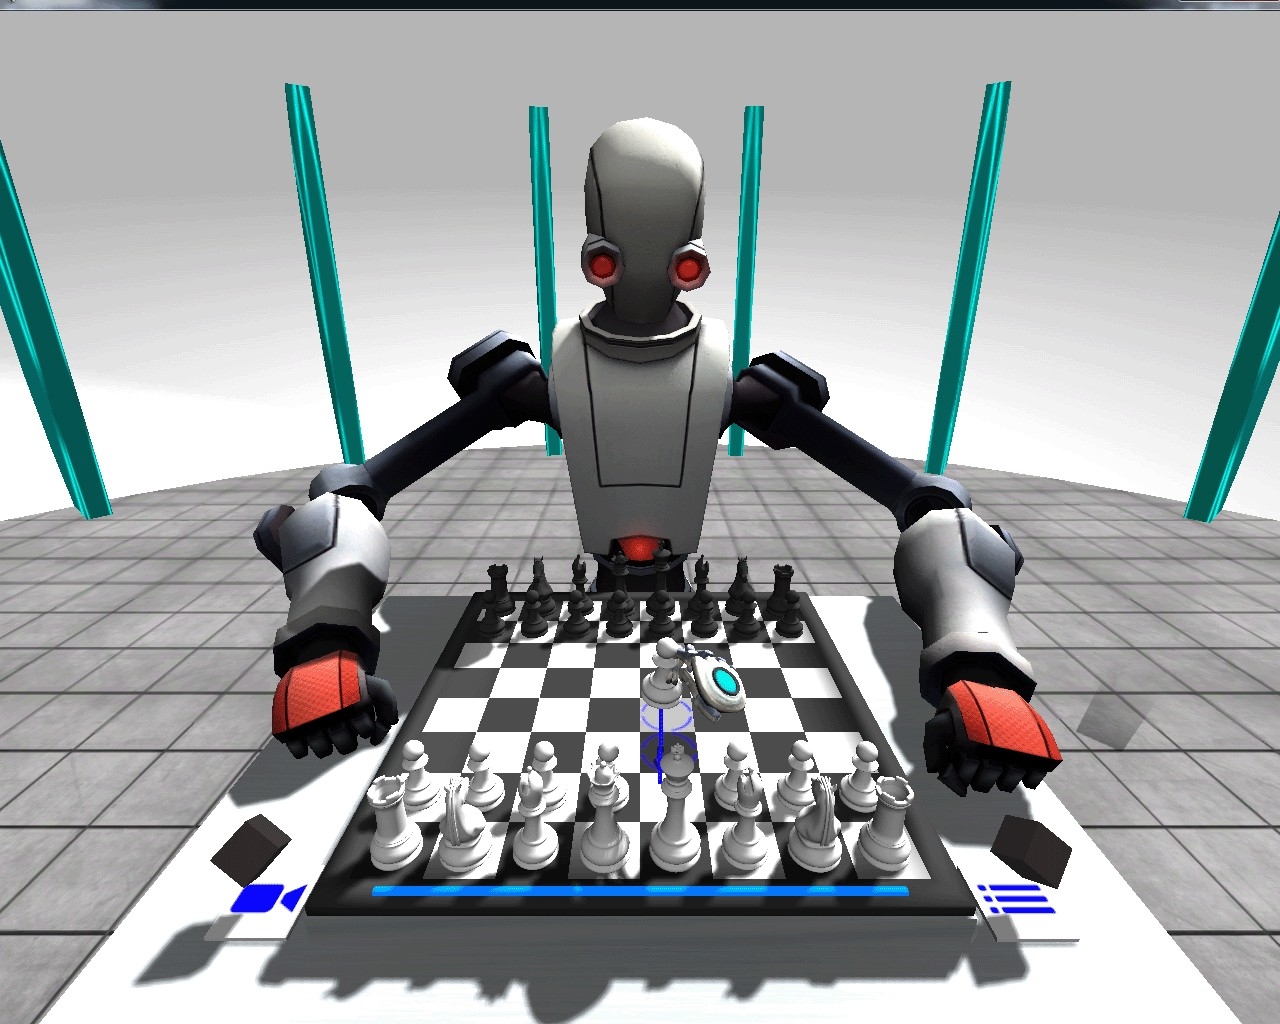 Игра команда роботов. Робот играющий в шахматы. Игра про роботов. Искусственный интеллект в играх. Шахматы с компьютером.